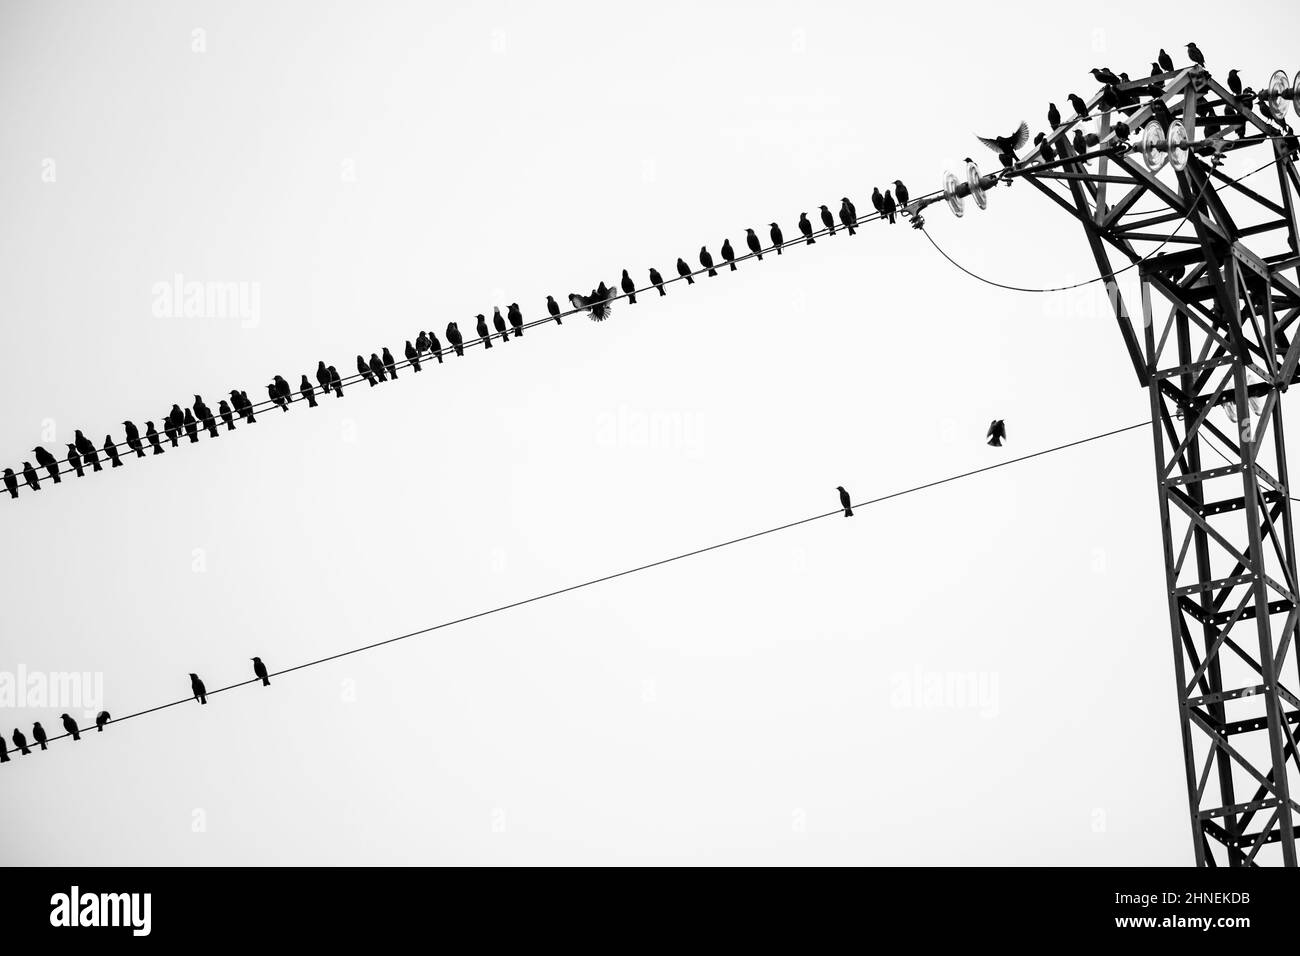 Le troupeau d'oiseaux qui se trouve à la mode est assis sur des lignes électriques haute tension Banque D'Images